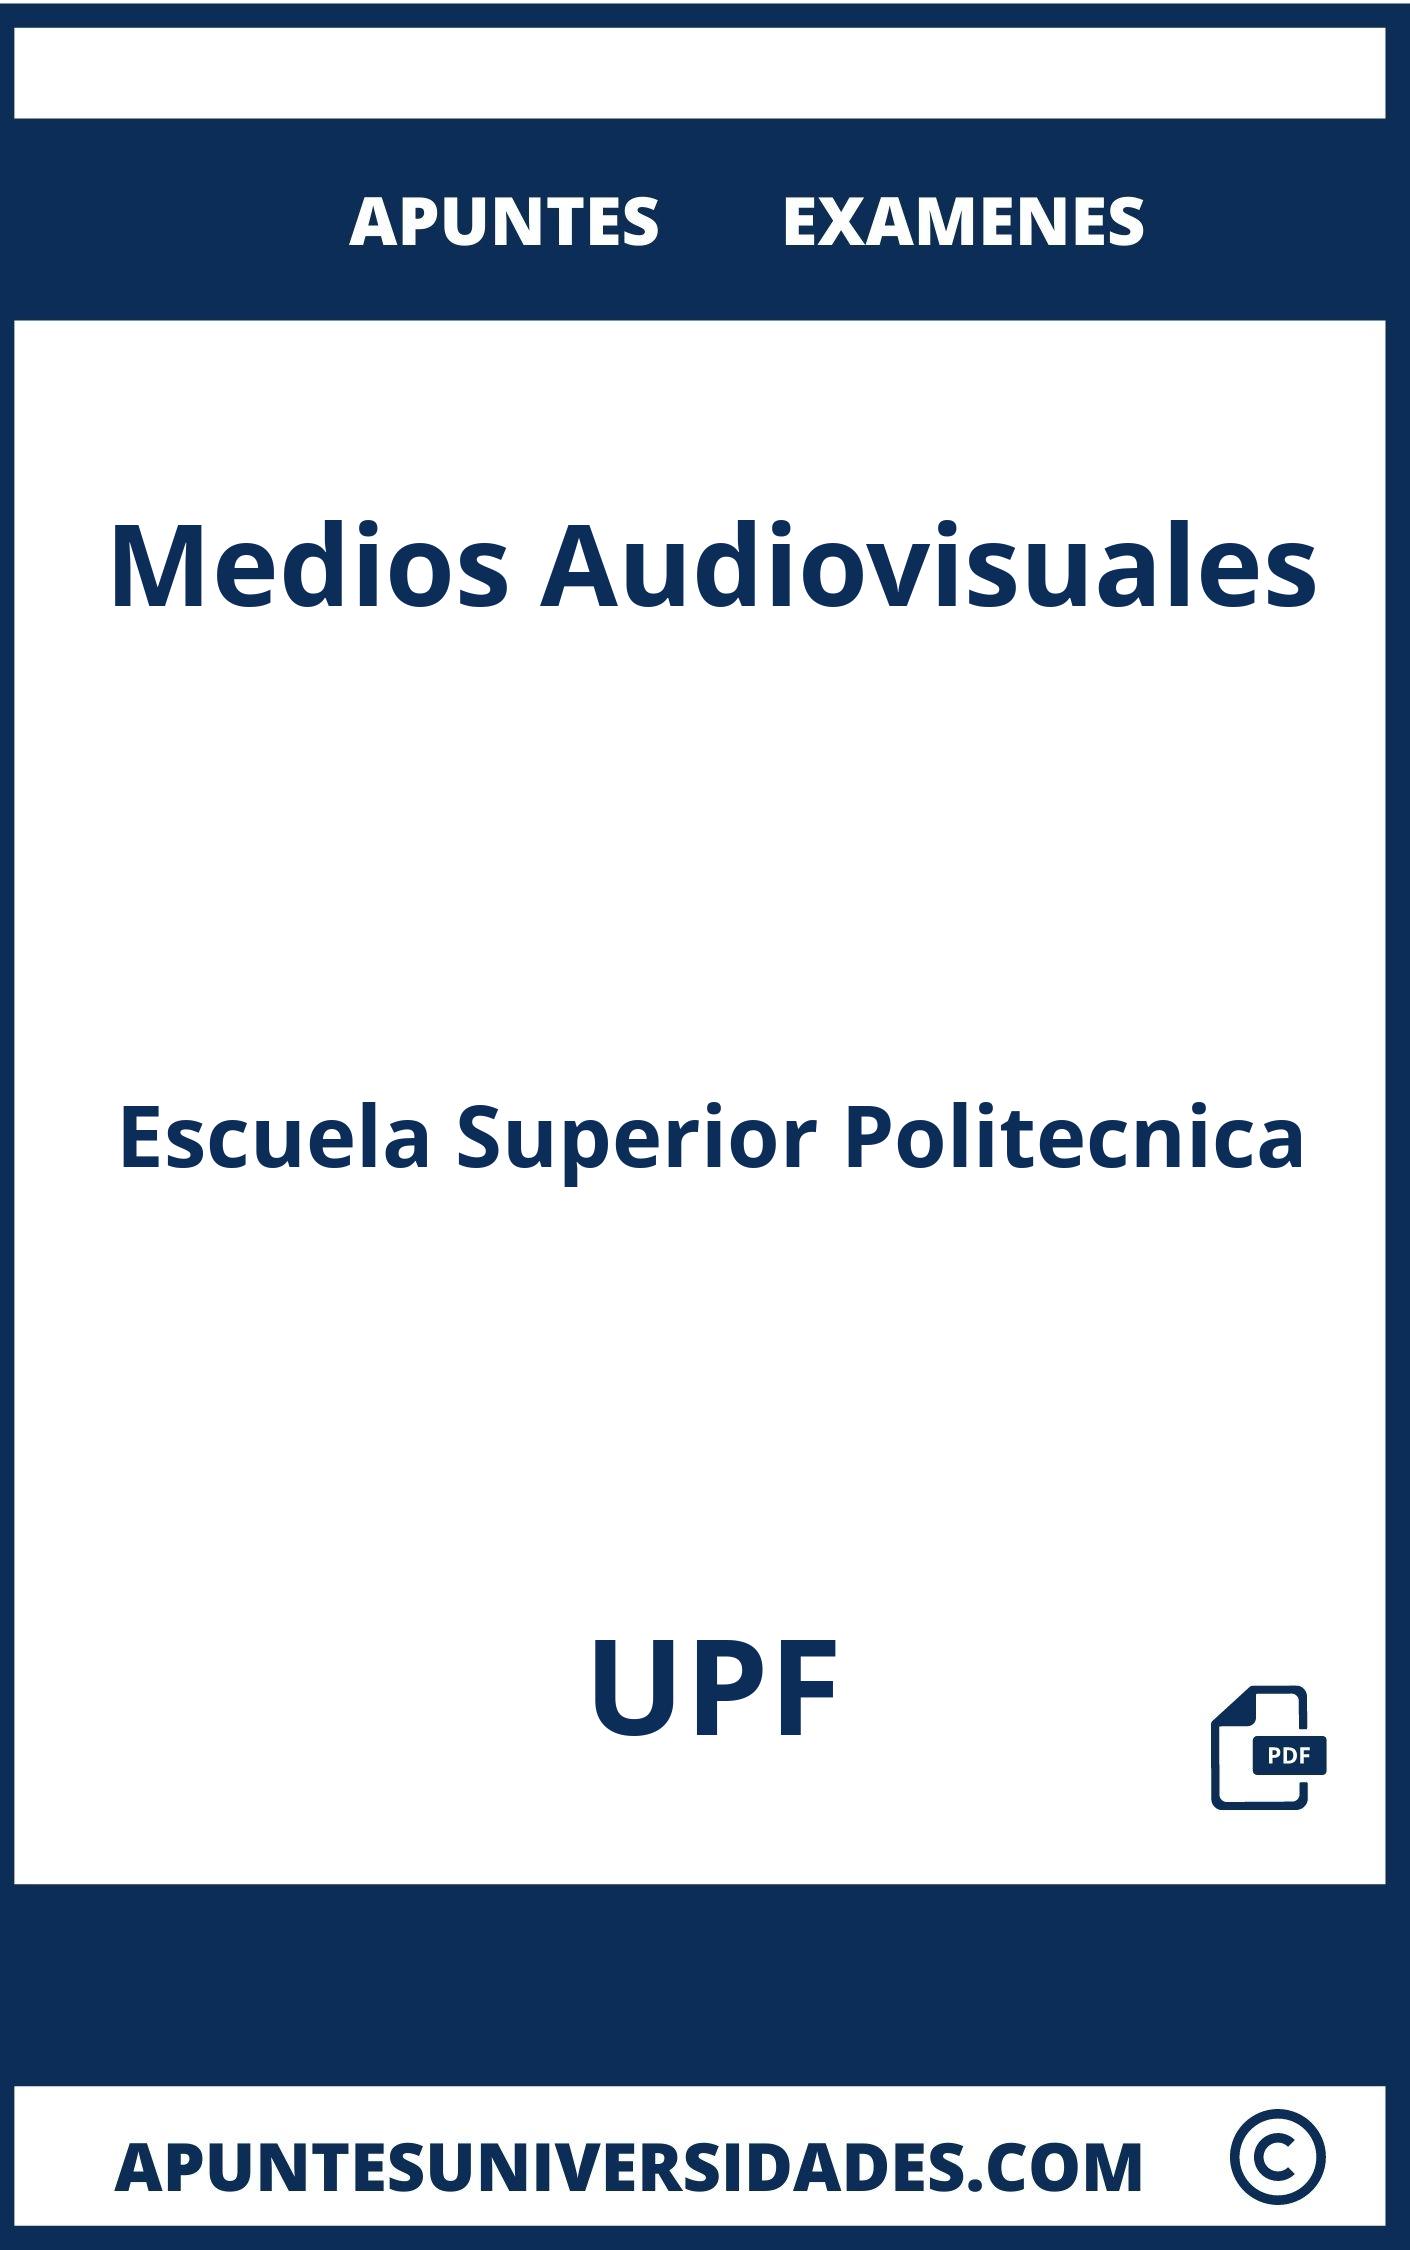 Examenes y Apuntes Medios Audiovisuales UPF